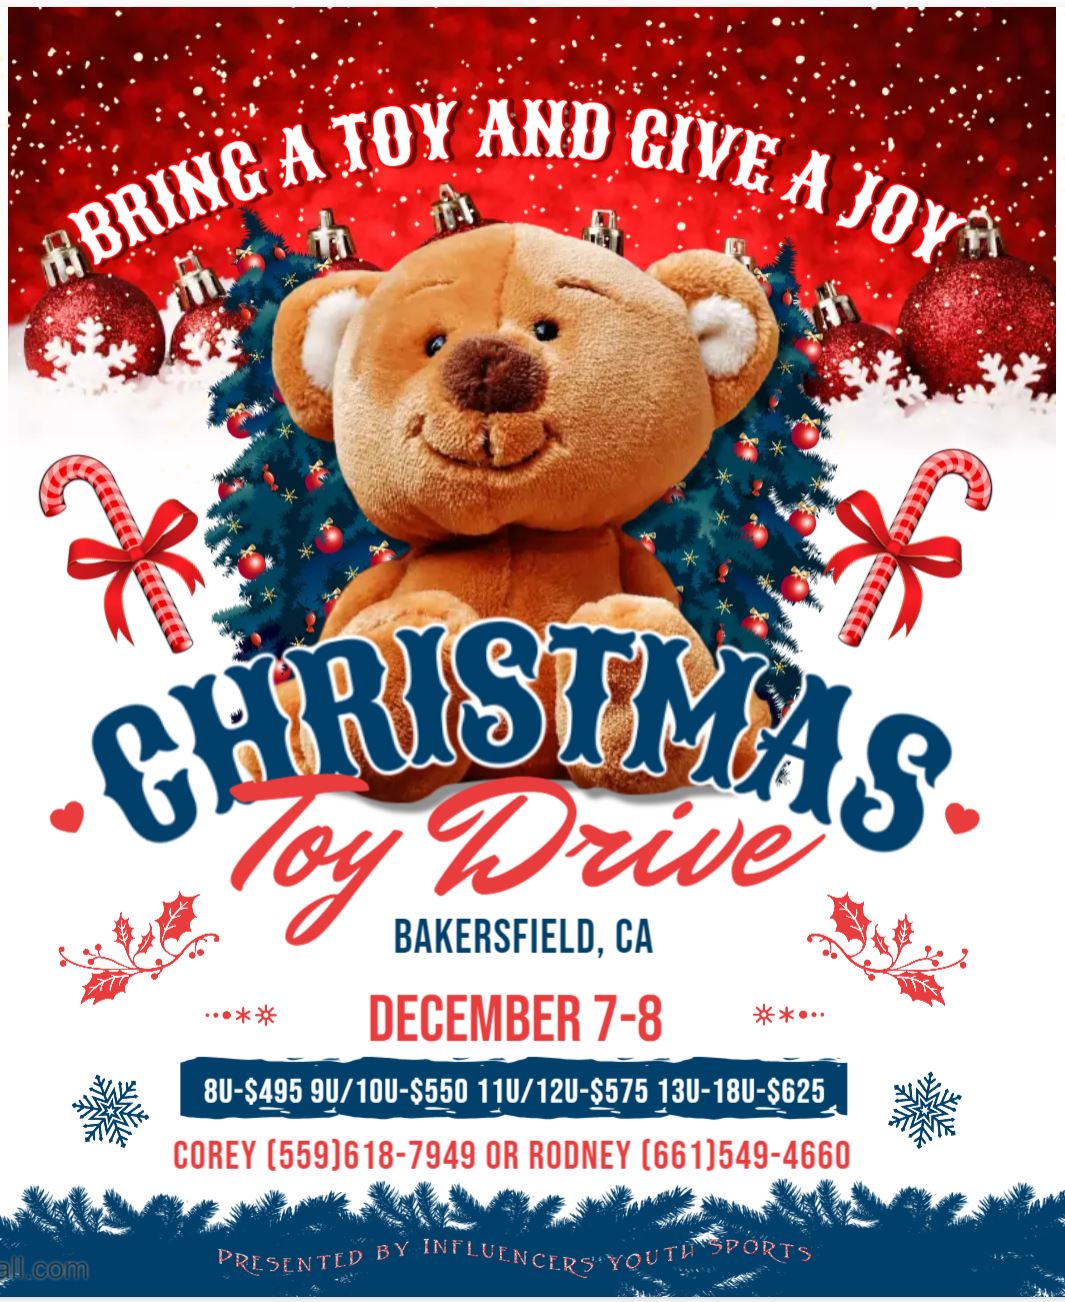 Bakersfield Toy Drive Logo